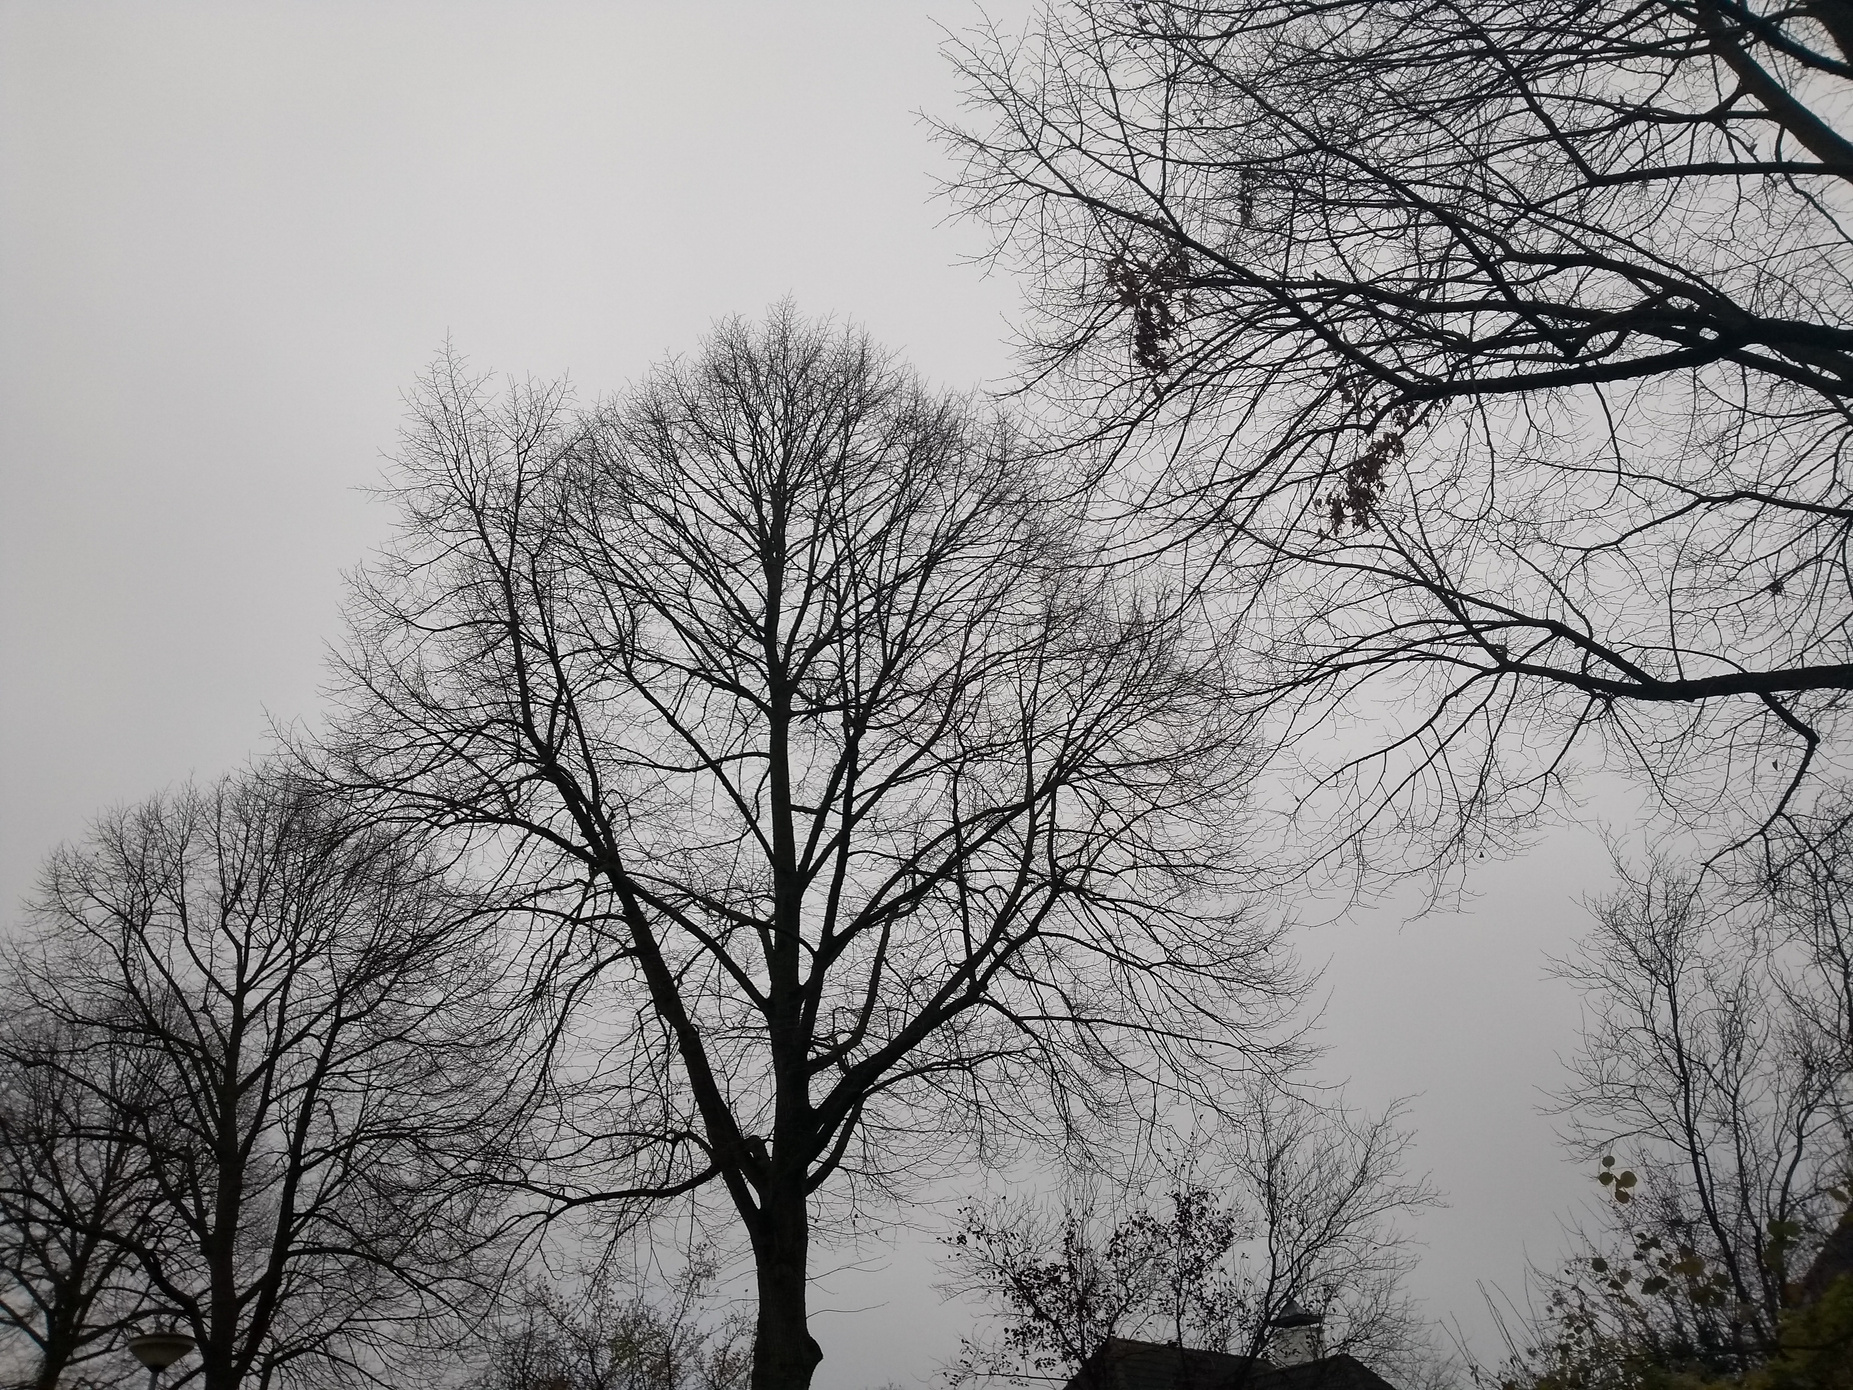 Scenic winter tree area setting under gray bright sky